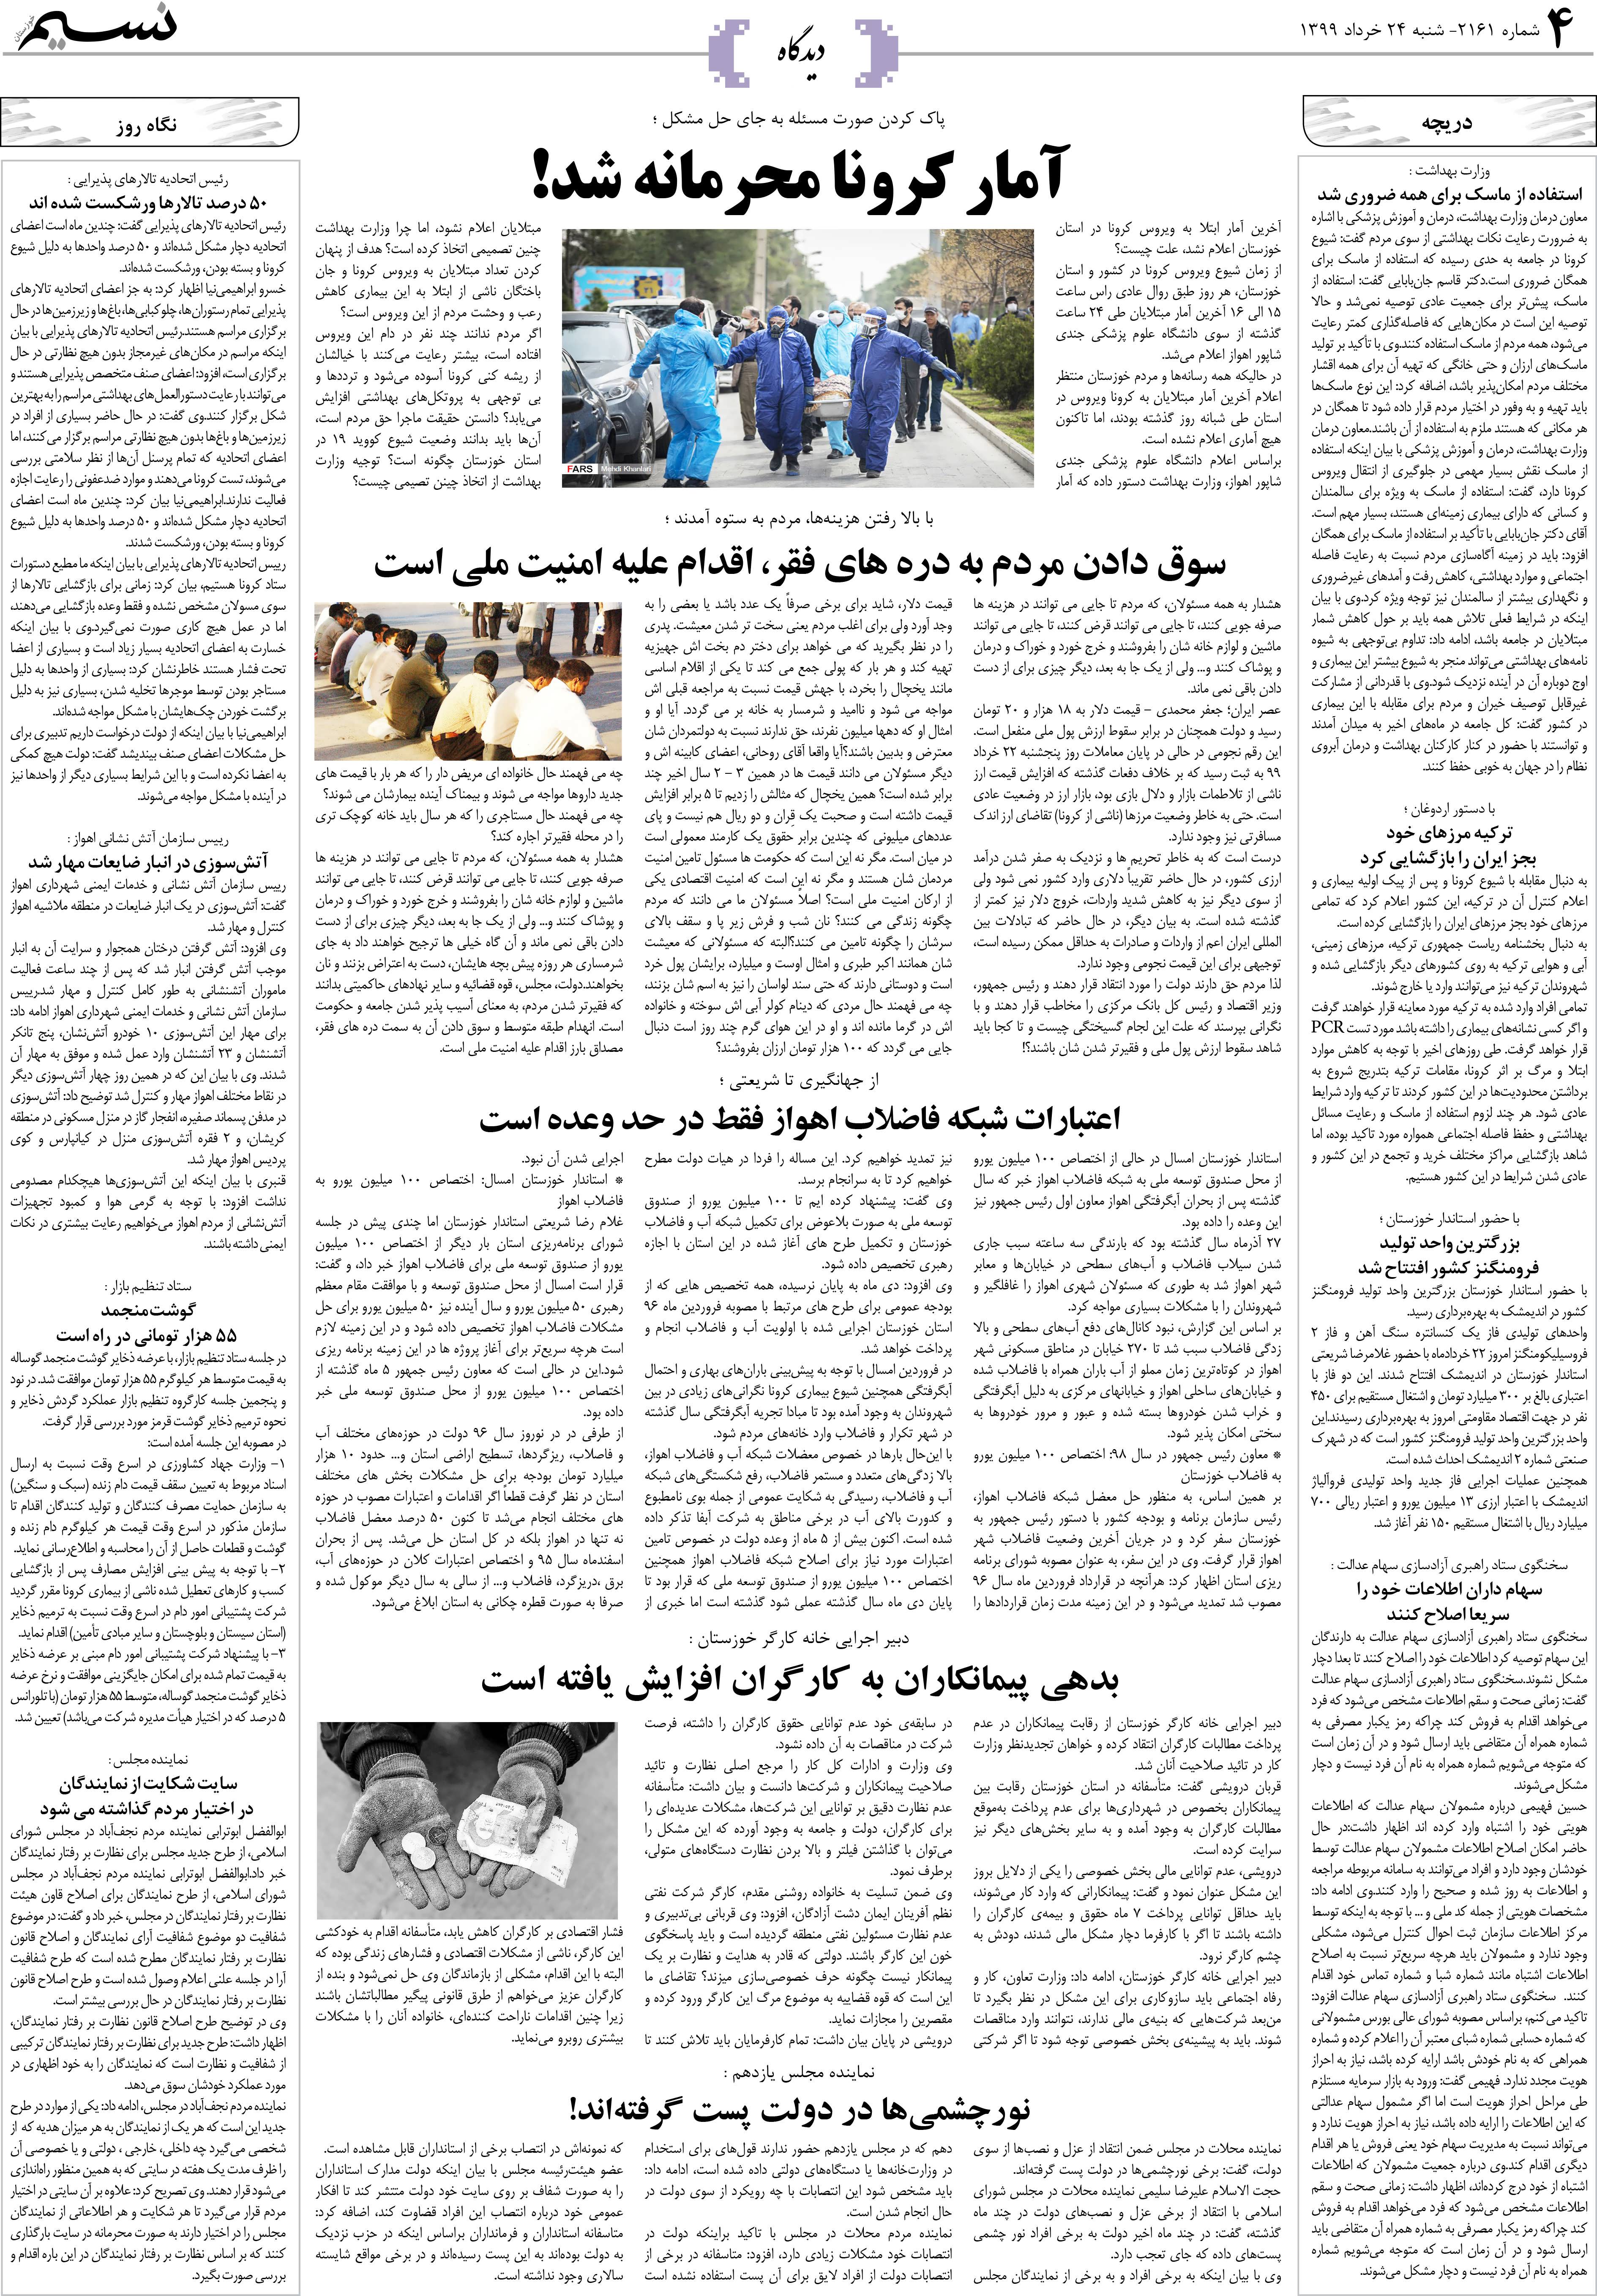 صفحه دیدگاه روزنامه نسیم شماره 2161